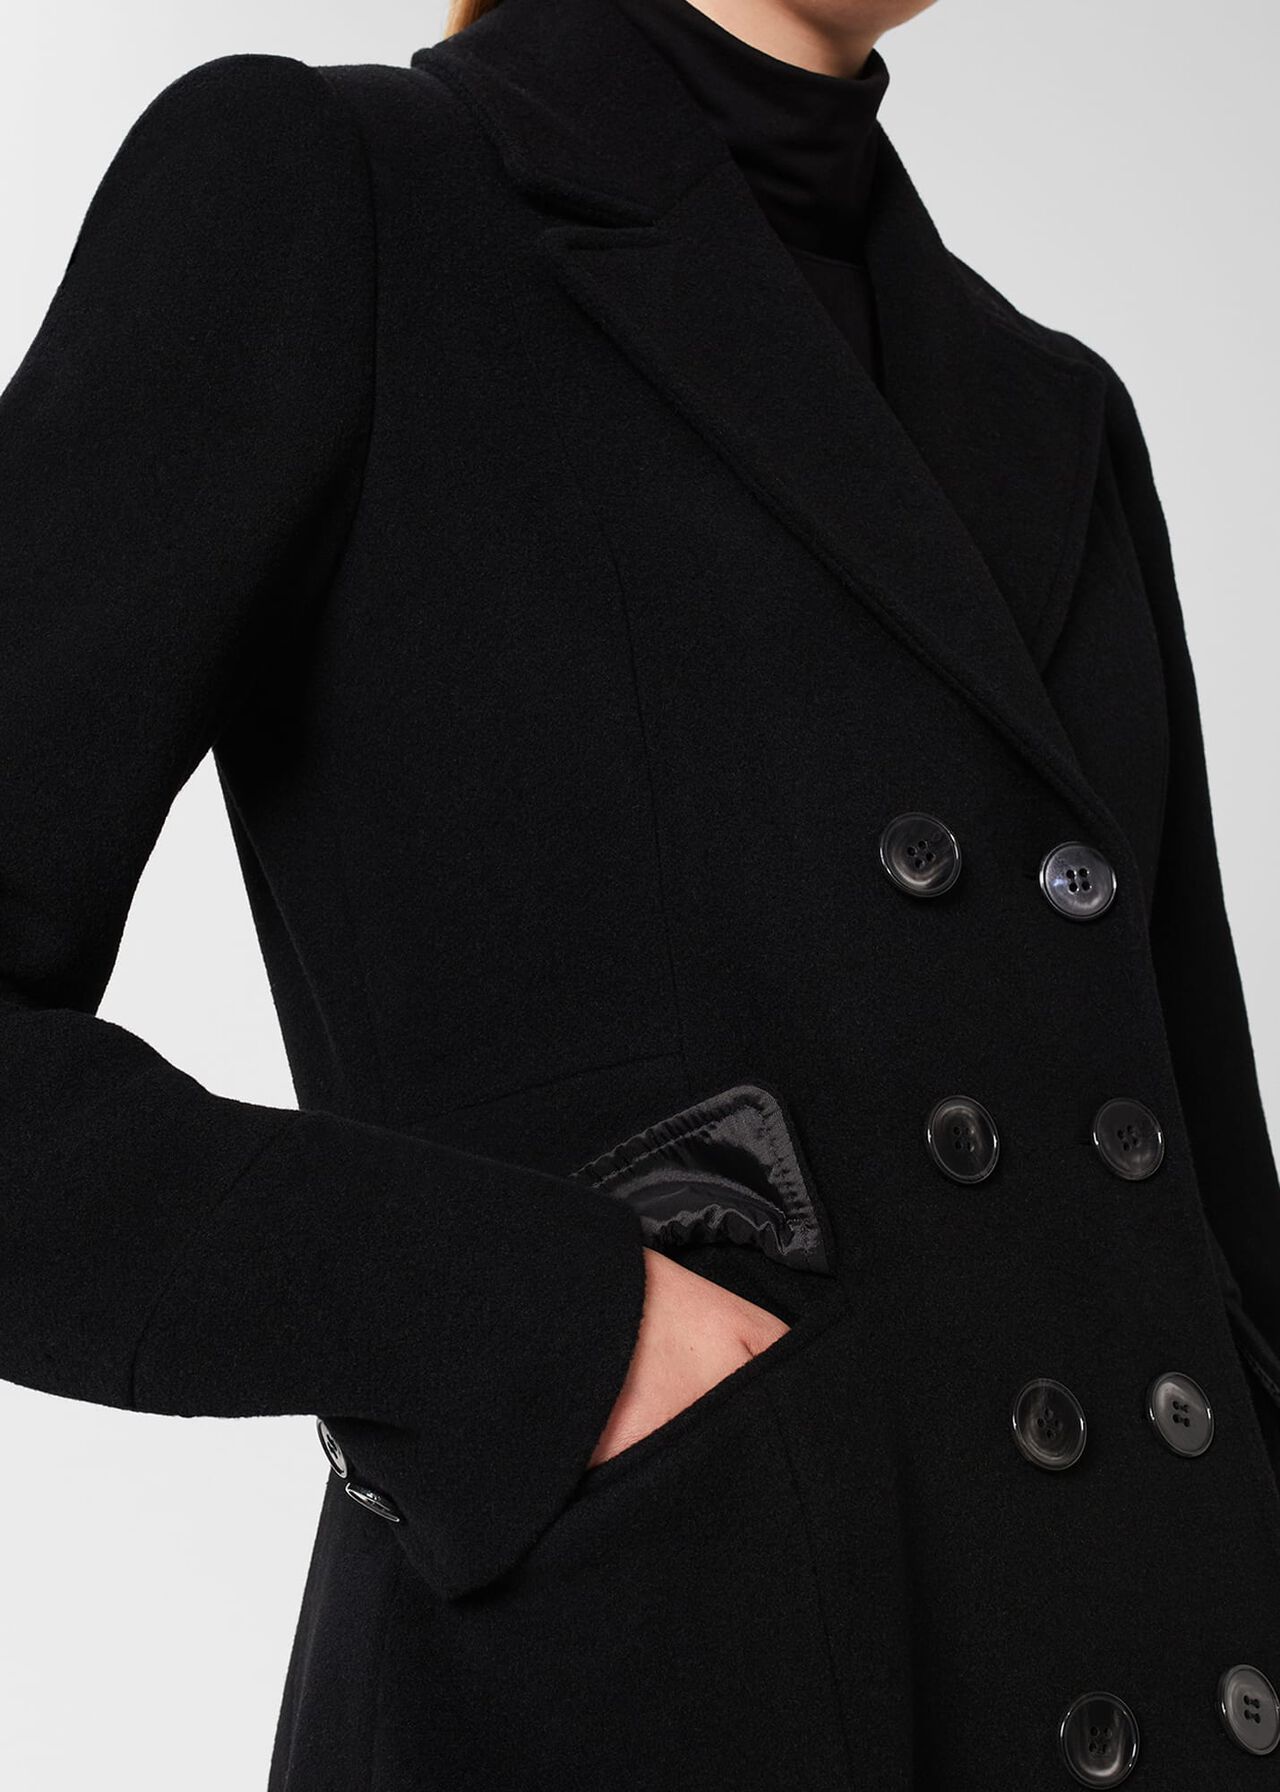 Blakely Coat, Black, hi-res